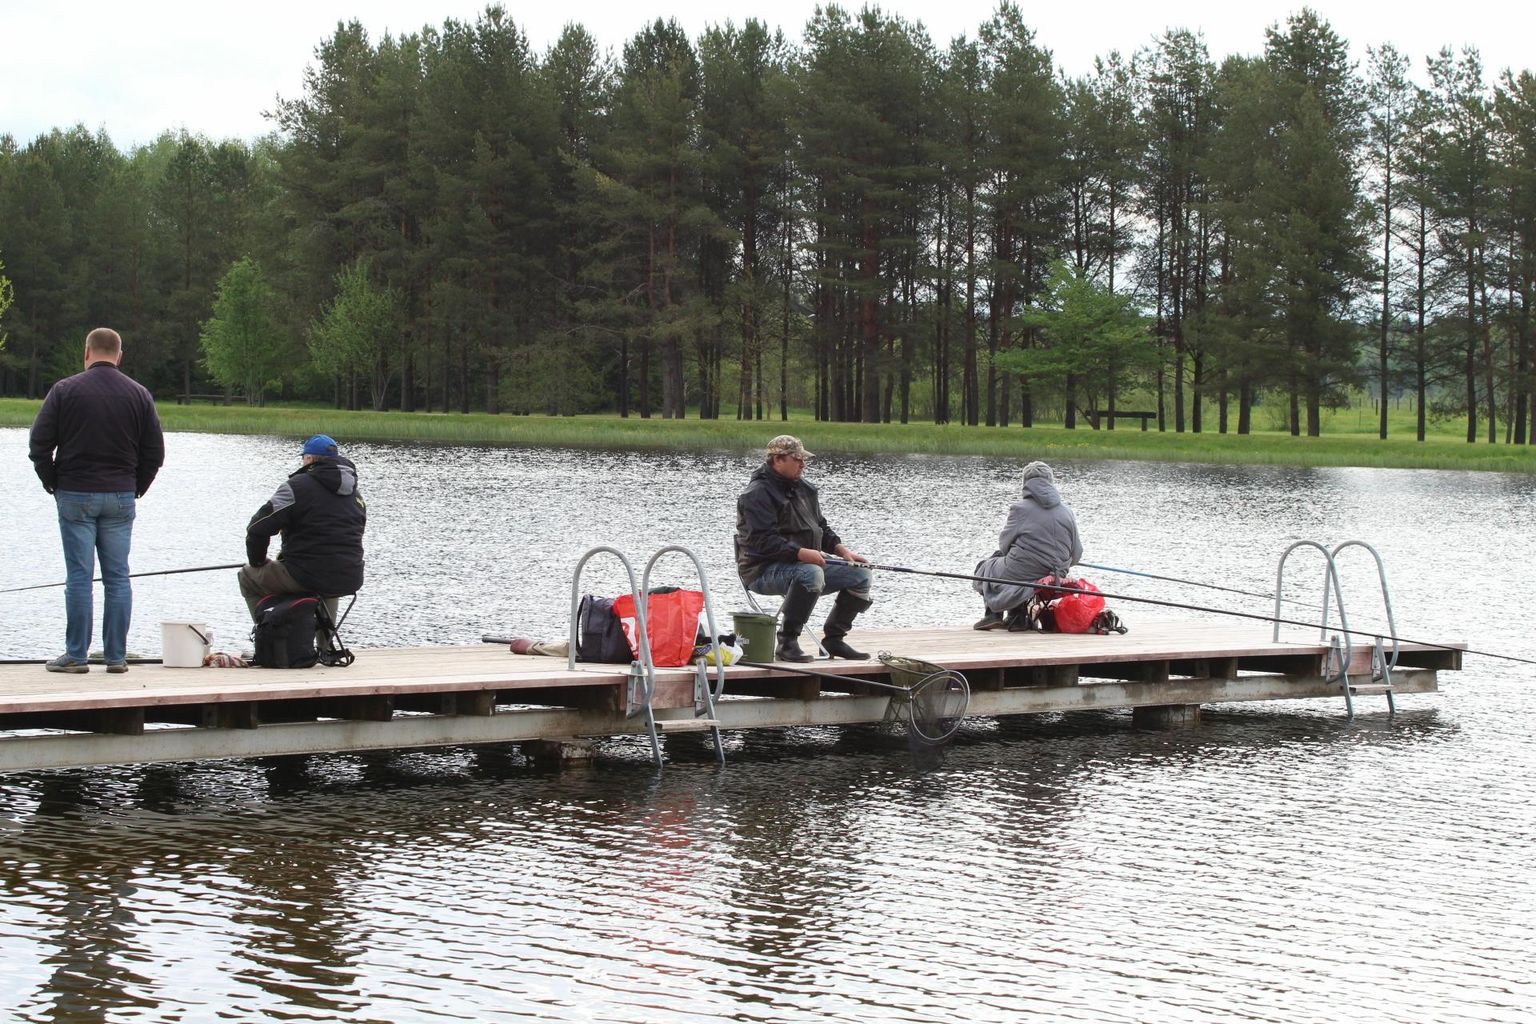 Kalapüügivõistlusi korraldatakse tänase päevani, kuid nõukogude ajal olid need palju osavõturohkemad.